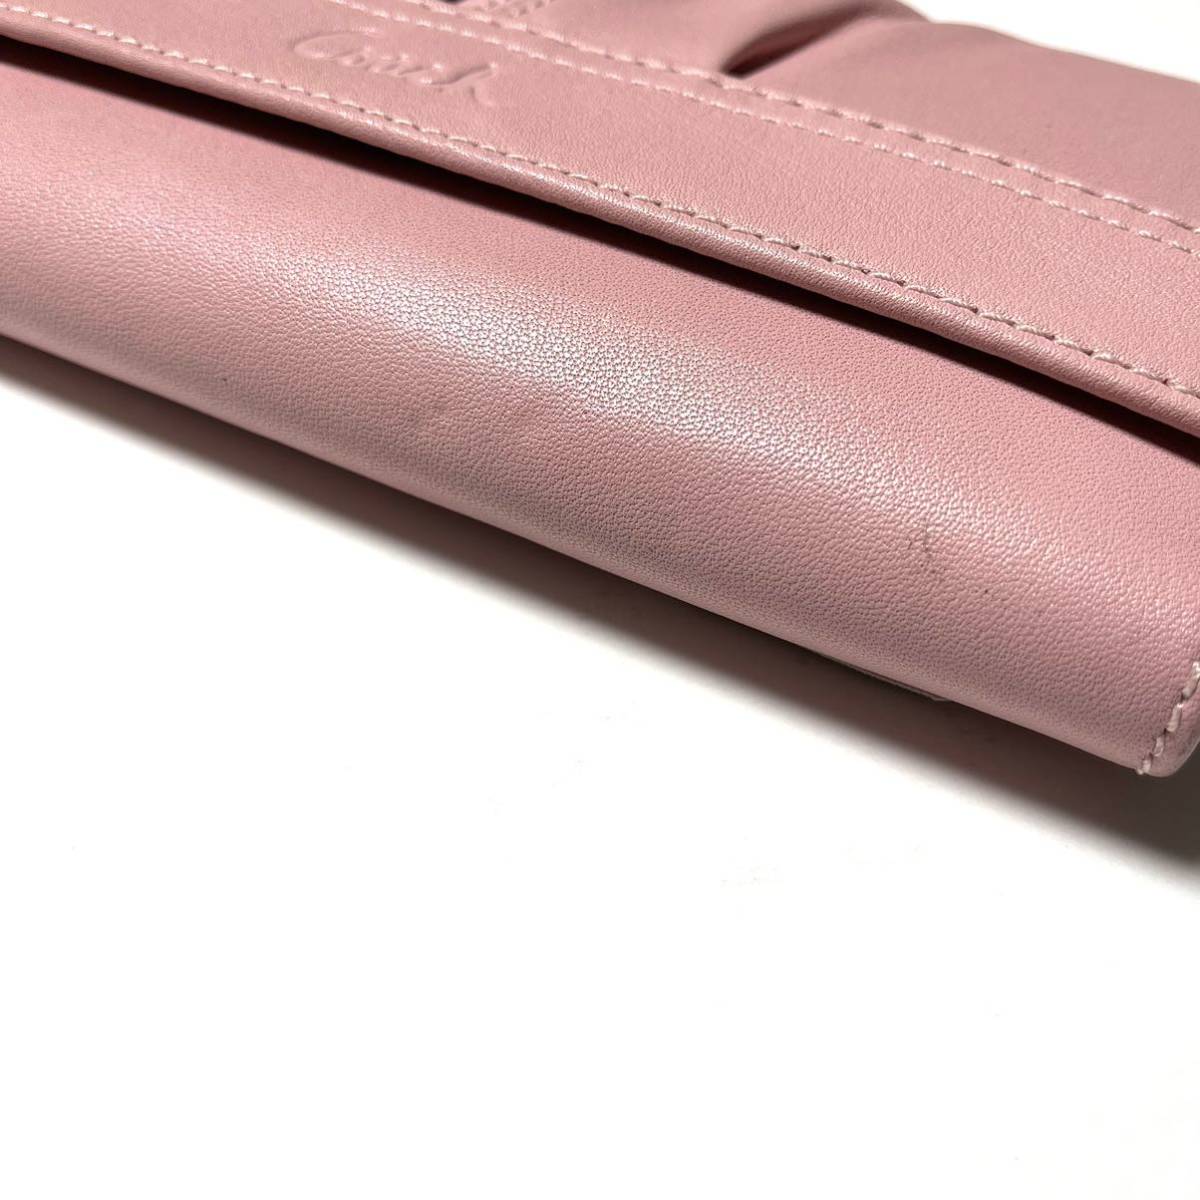 コーチCOACH ピンクのレザー長財布　タグ付き未使用品